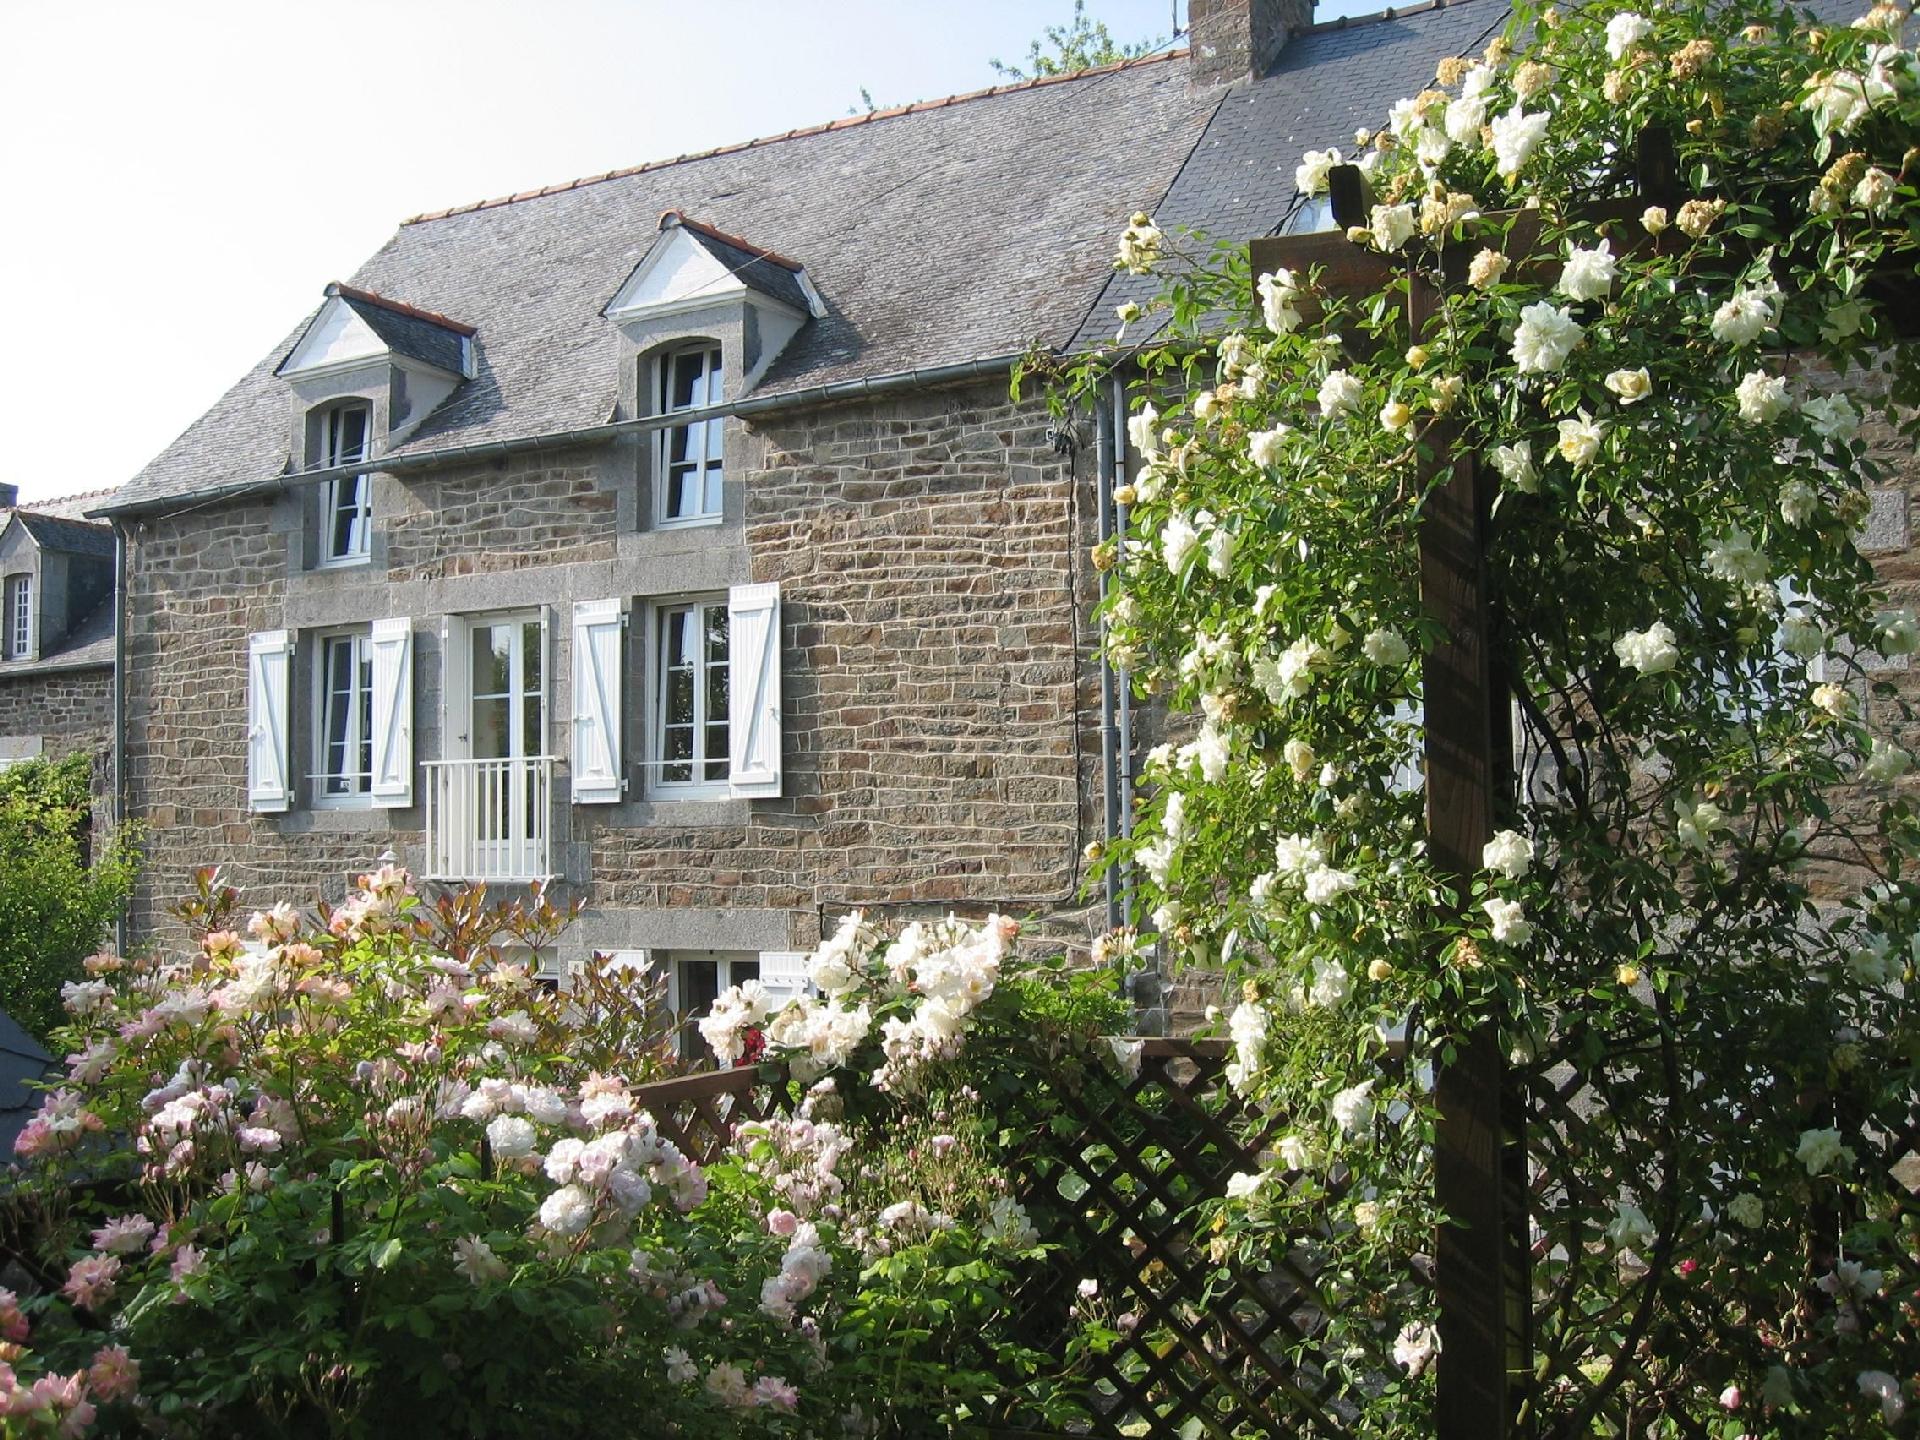  Renoviertes, typisch bretonisches Steinhaus mit w Ferienhaus in Frankreich